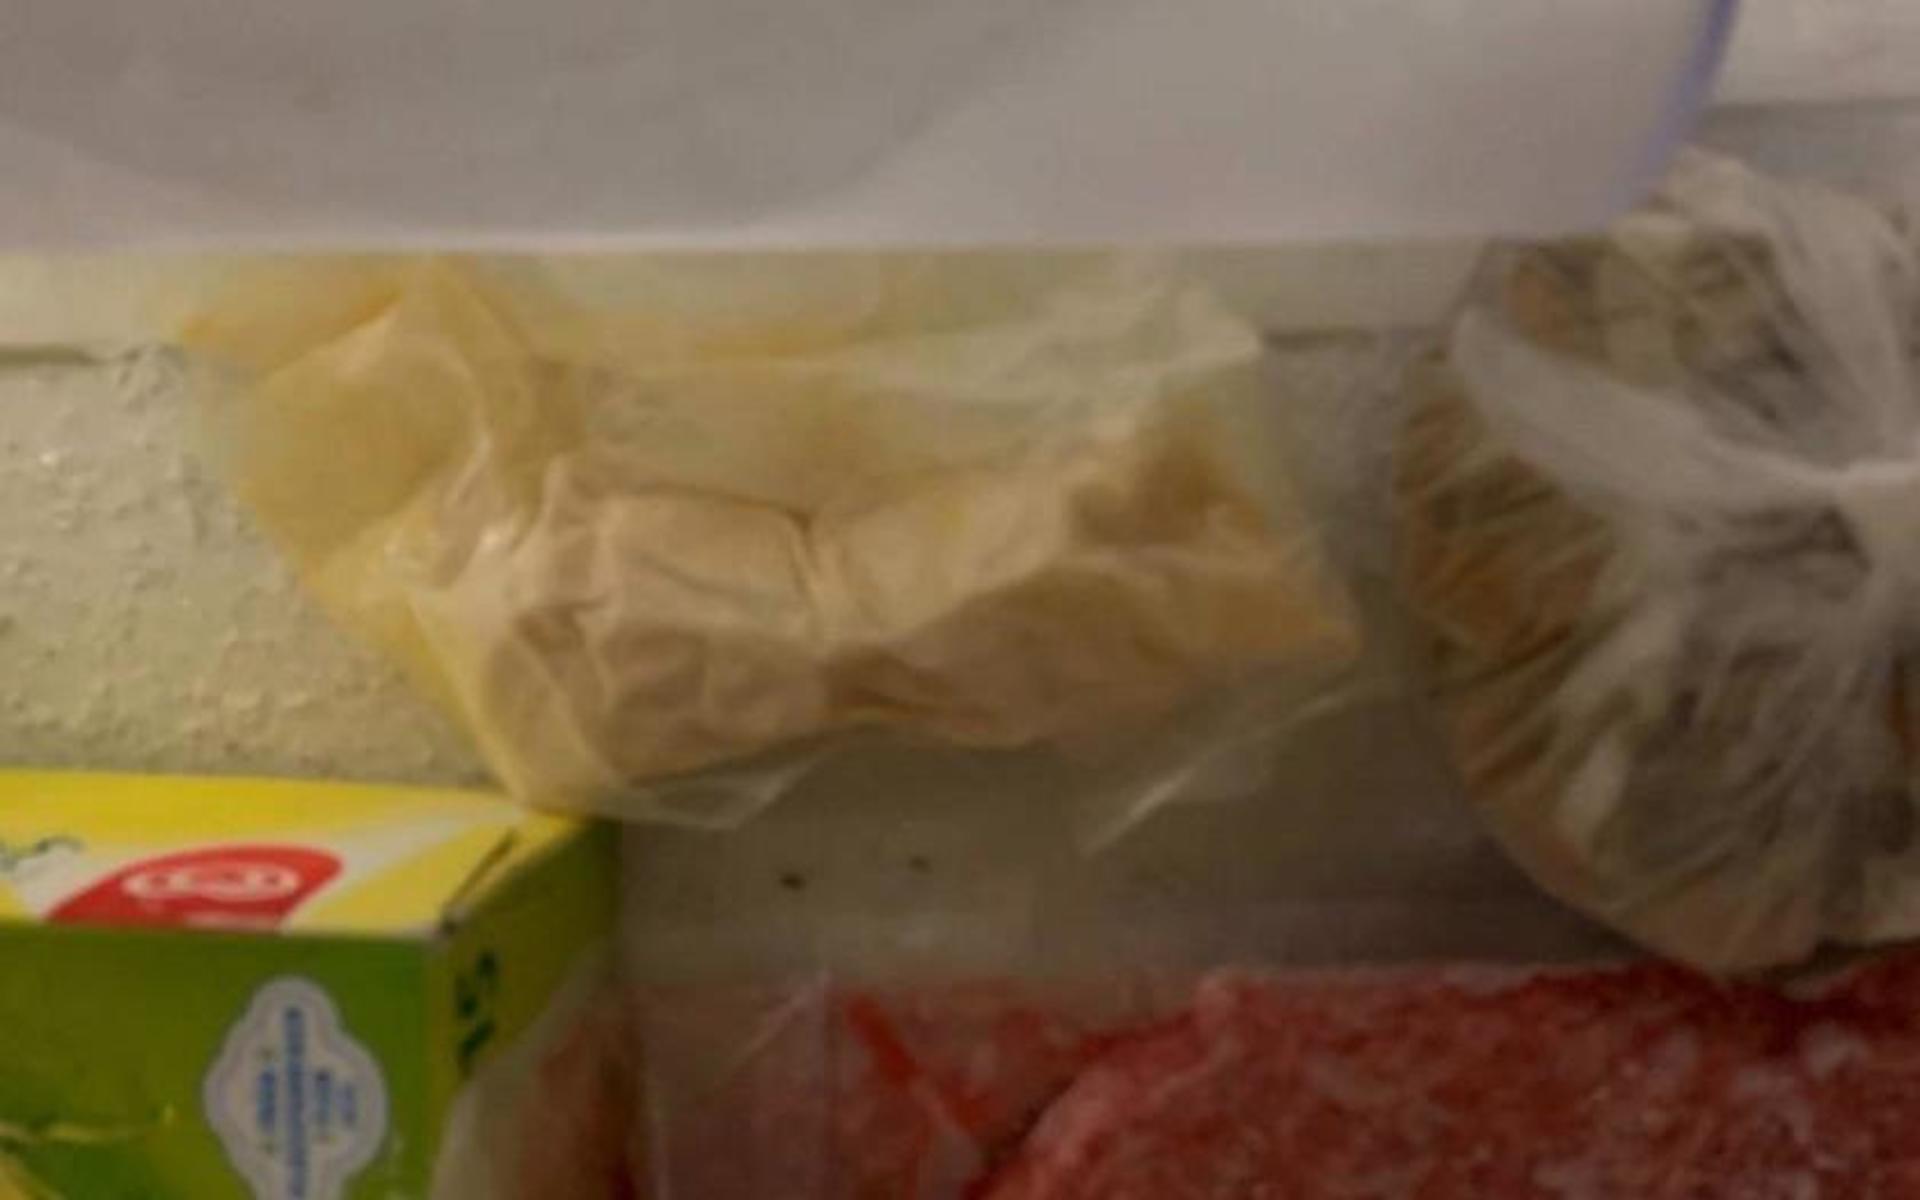 Bland glass och köttfärs i frysboxen hittades även amfetamin.